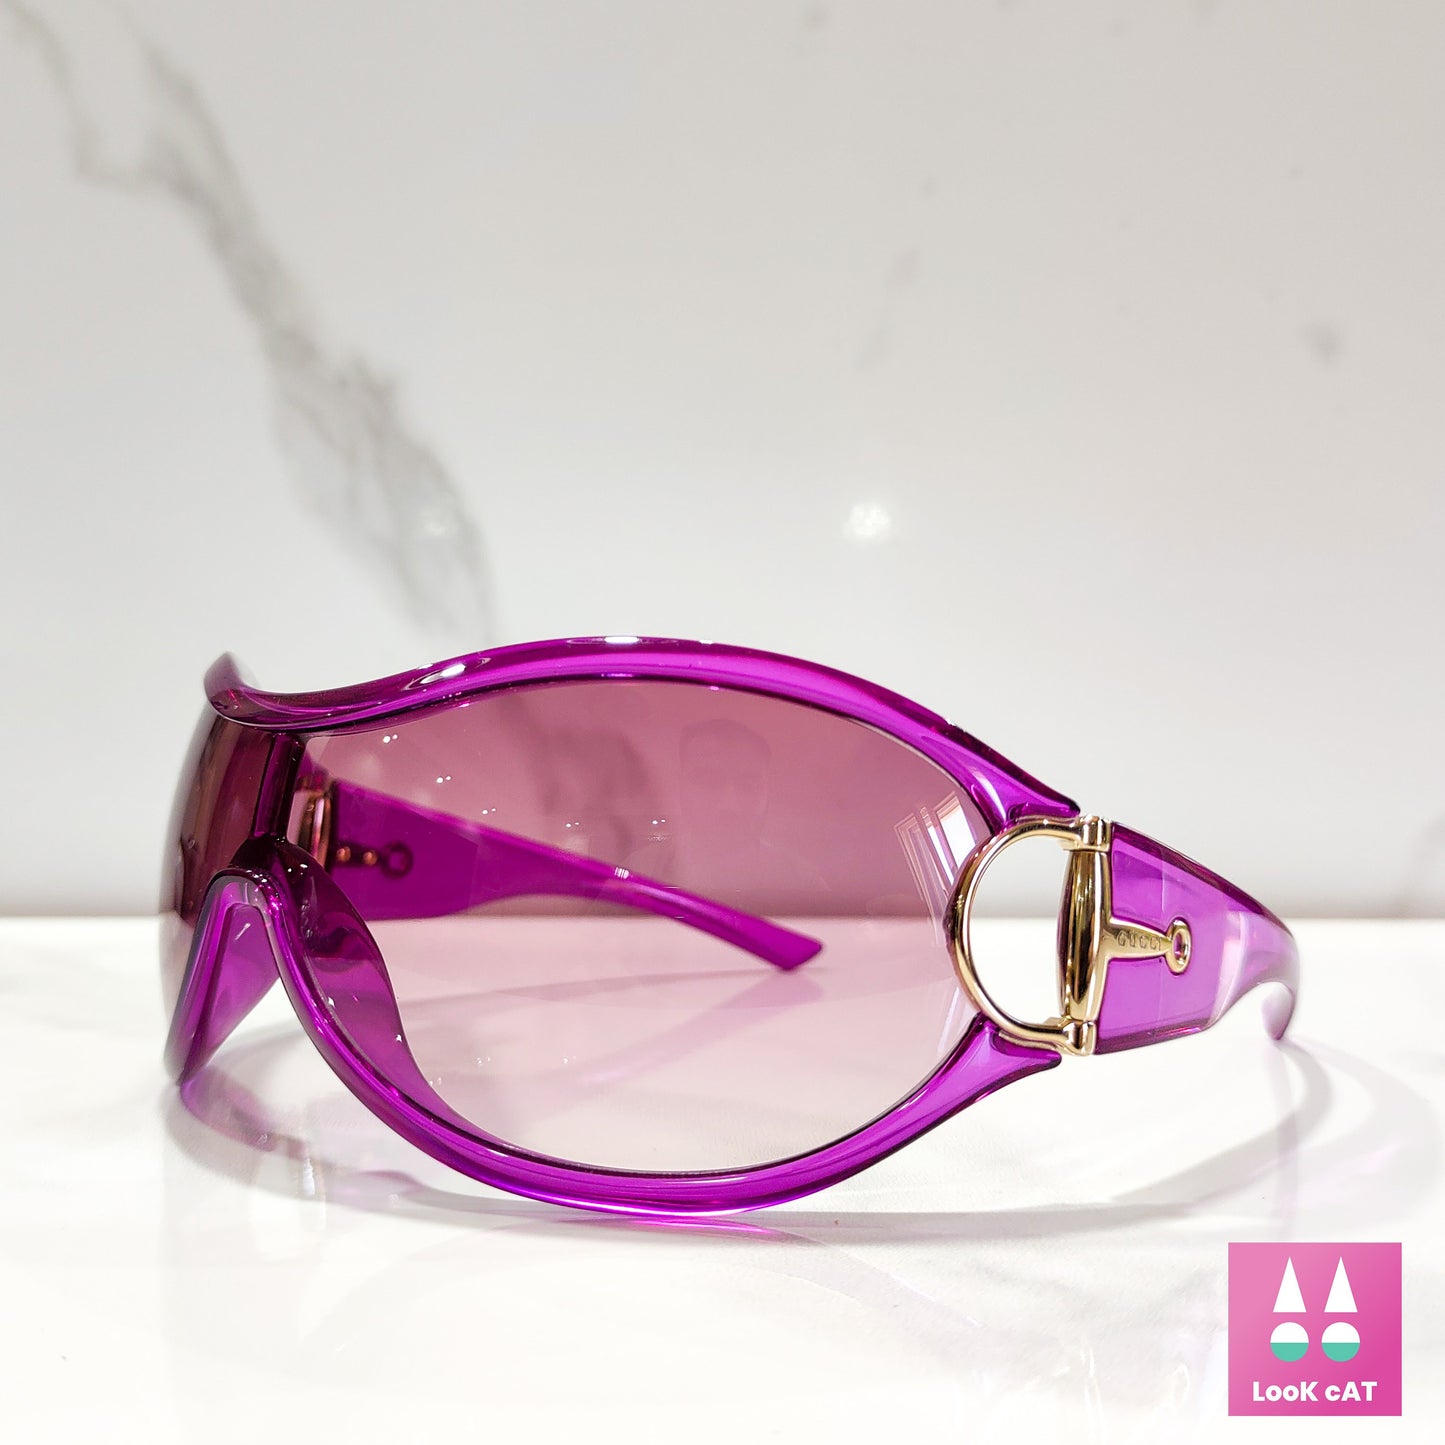 Gucci 2561 occhiali da sole vintage wrap shield Pink fuxia NOS occhiali lunetta brille anni '90